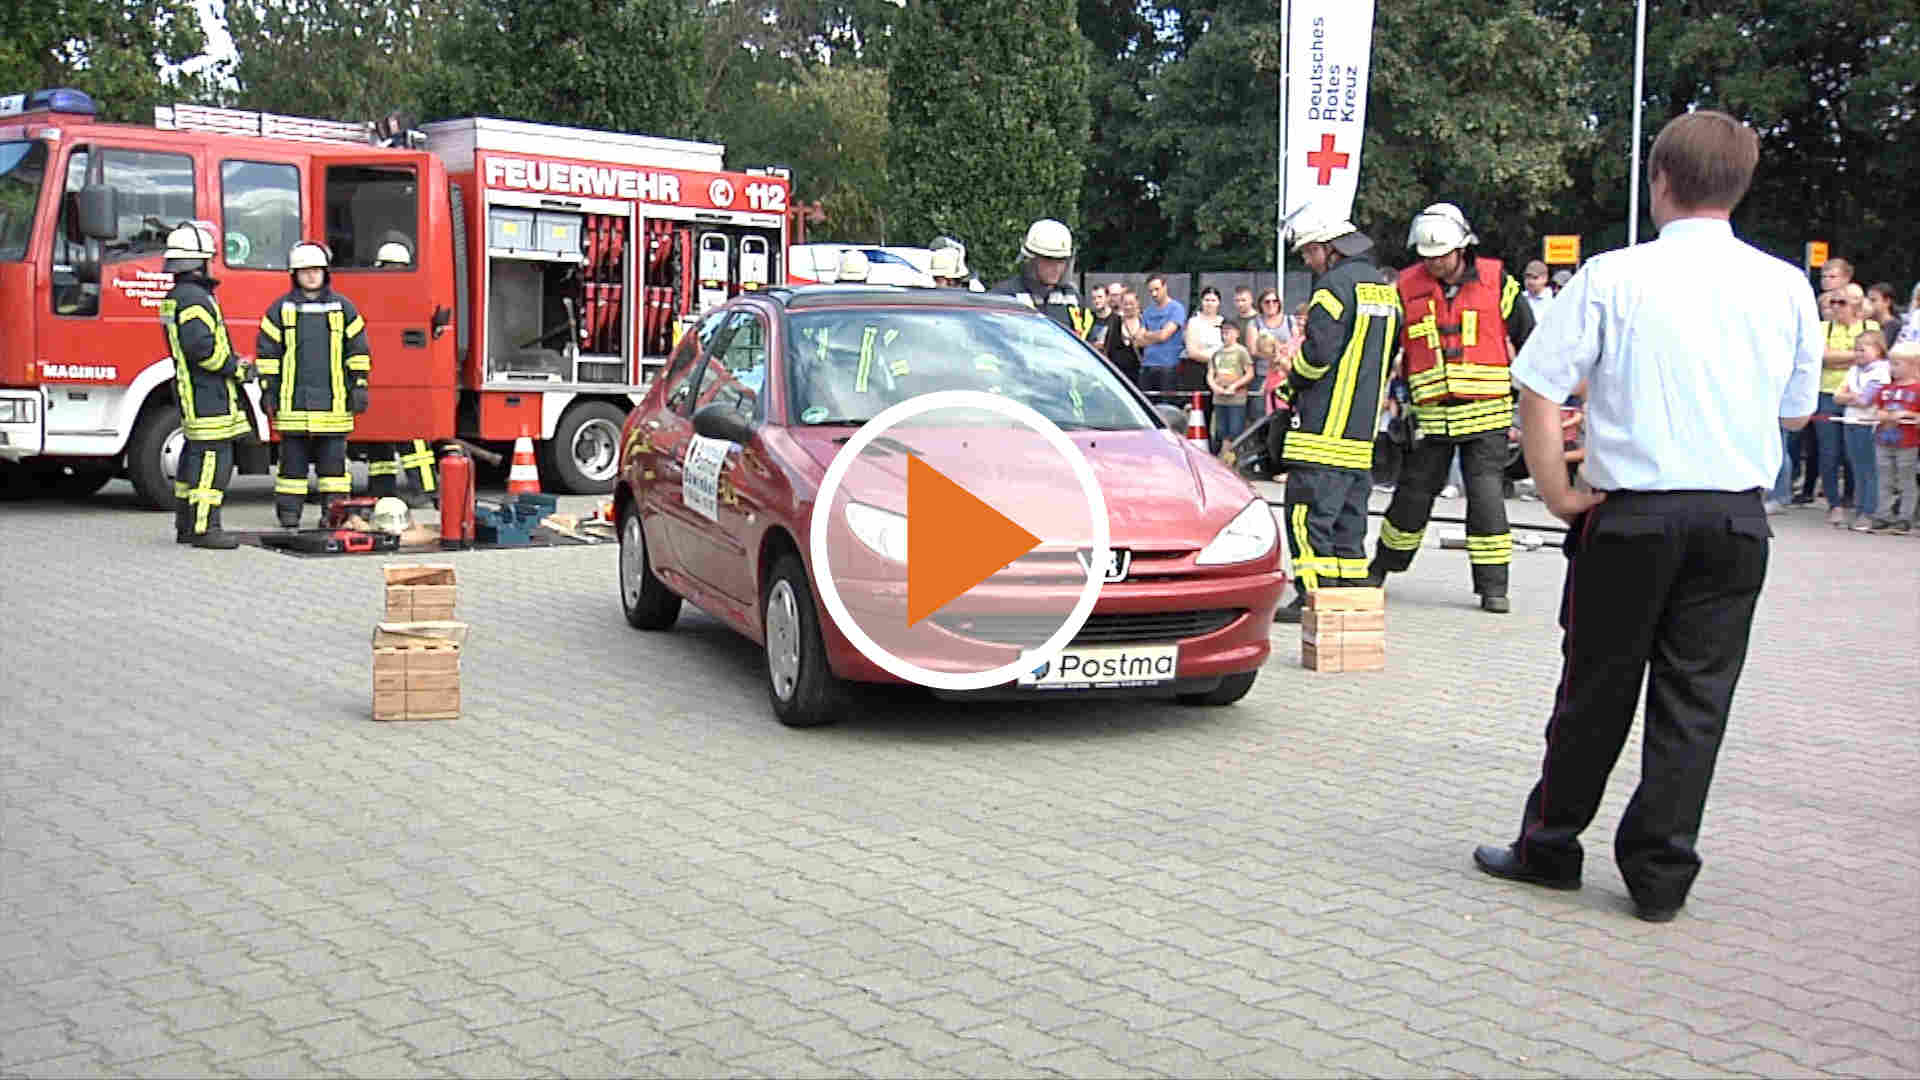 220829_Screen_Feuerwehr-Bawinkel-feierte-150-Jubilaeum